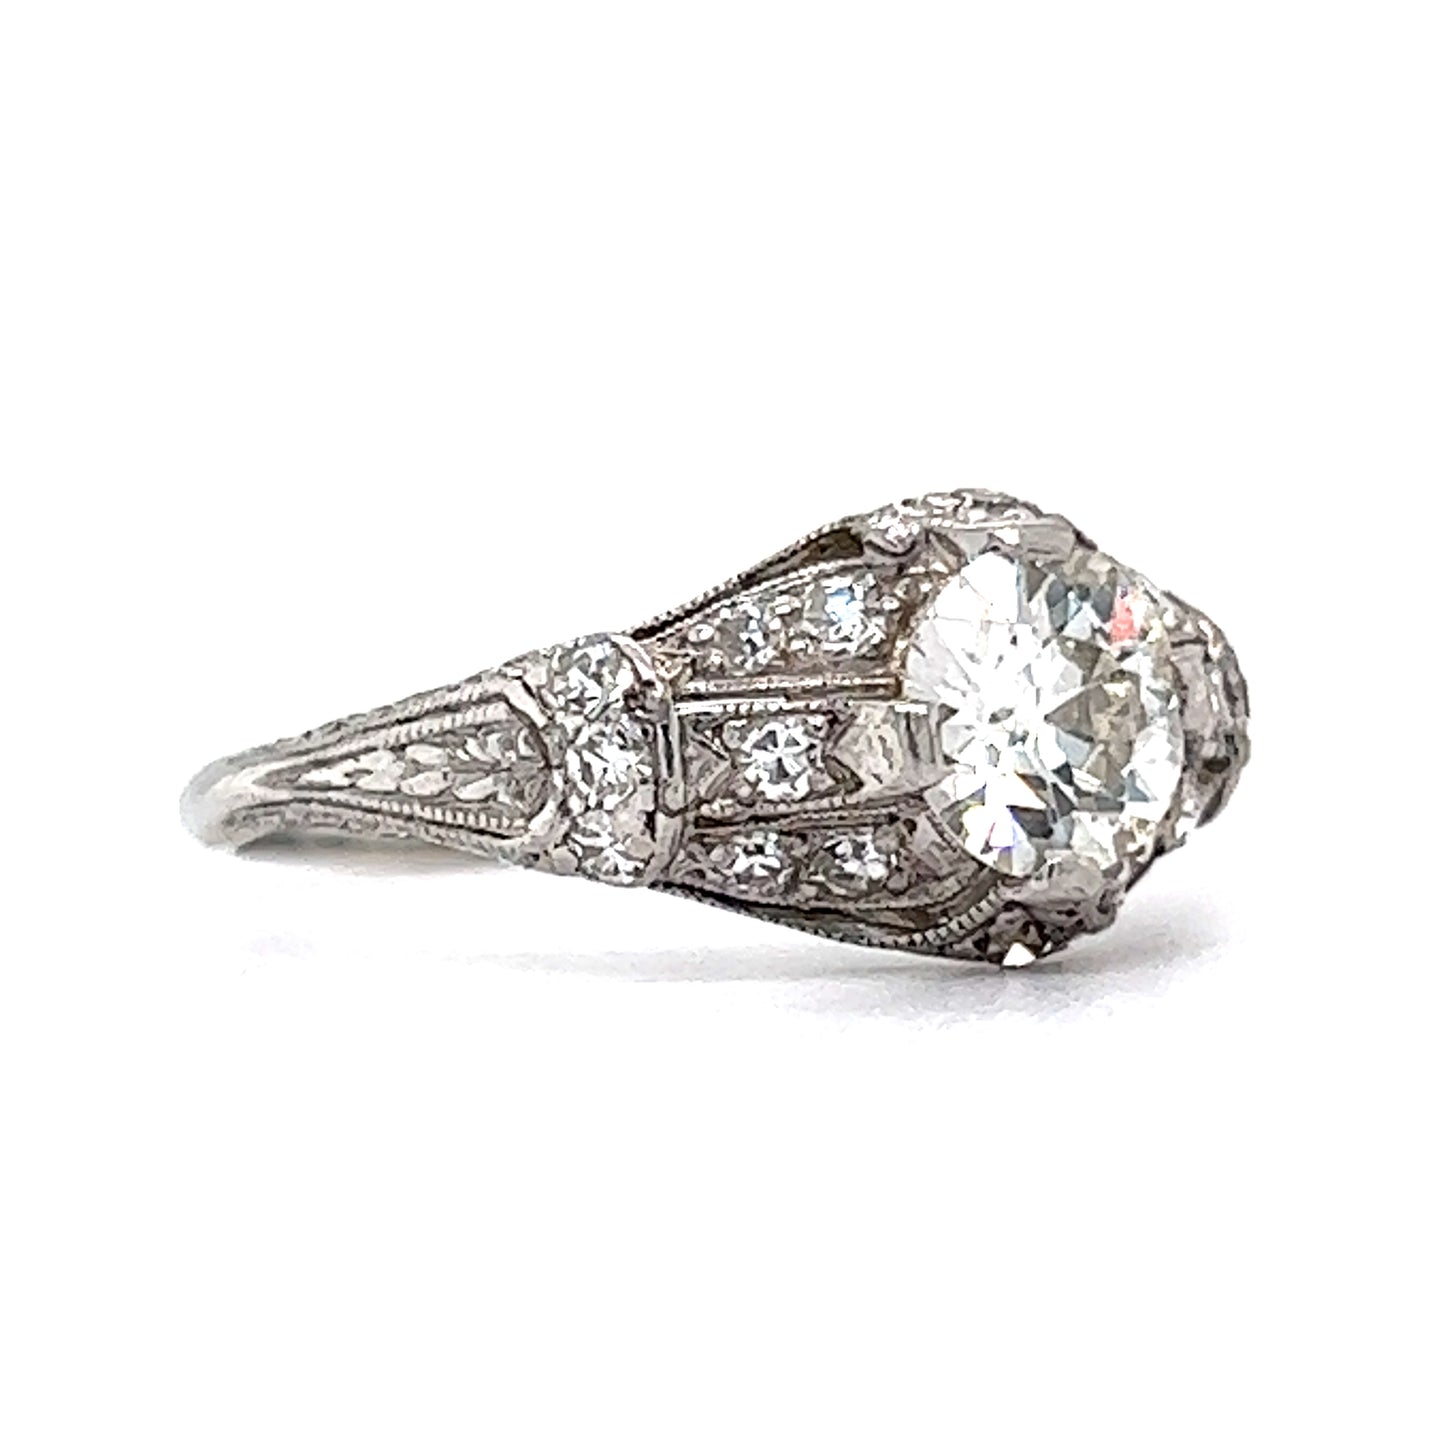 .80 Art Deco Diamond Engagement Ring in Platinum